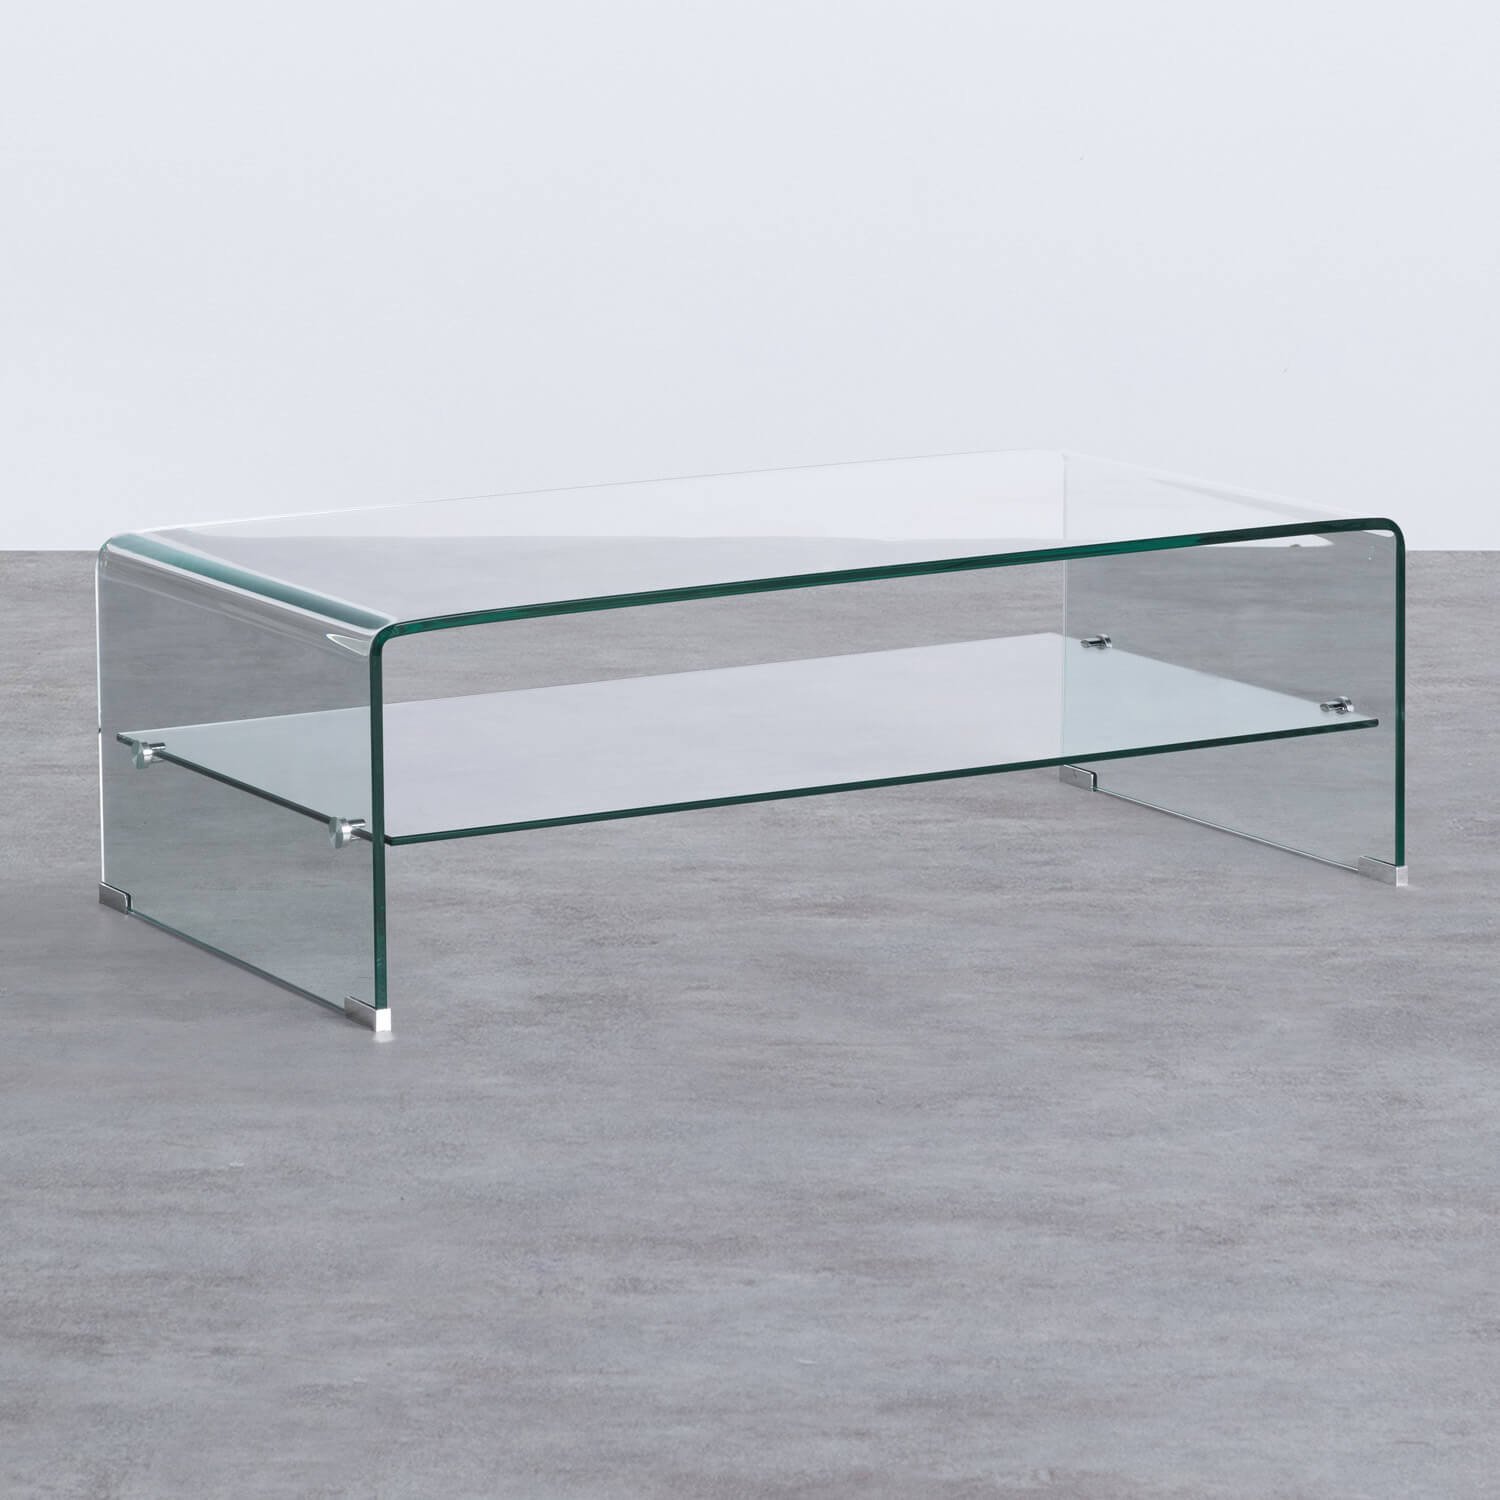 Tavolino da Caffé Rettangolare in Cristallo (110x55 cm) Alessa, immagine della galleria 1